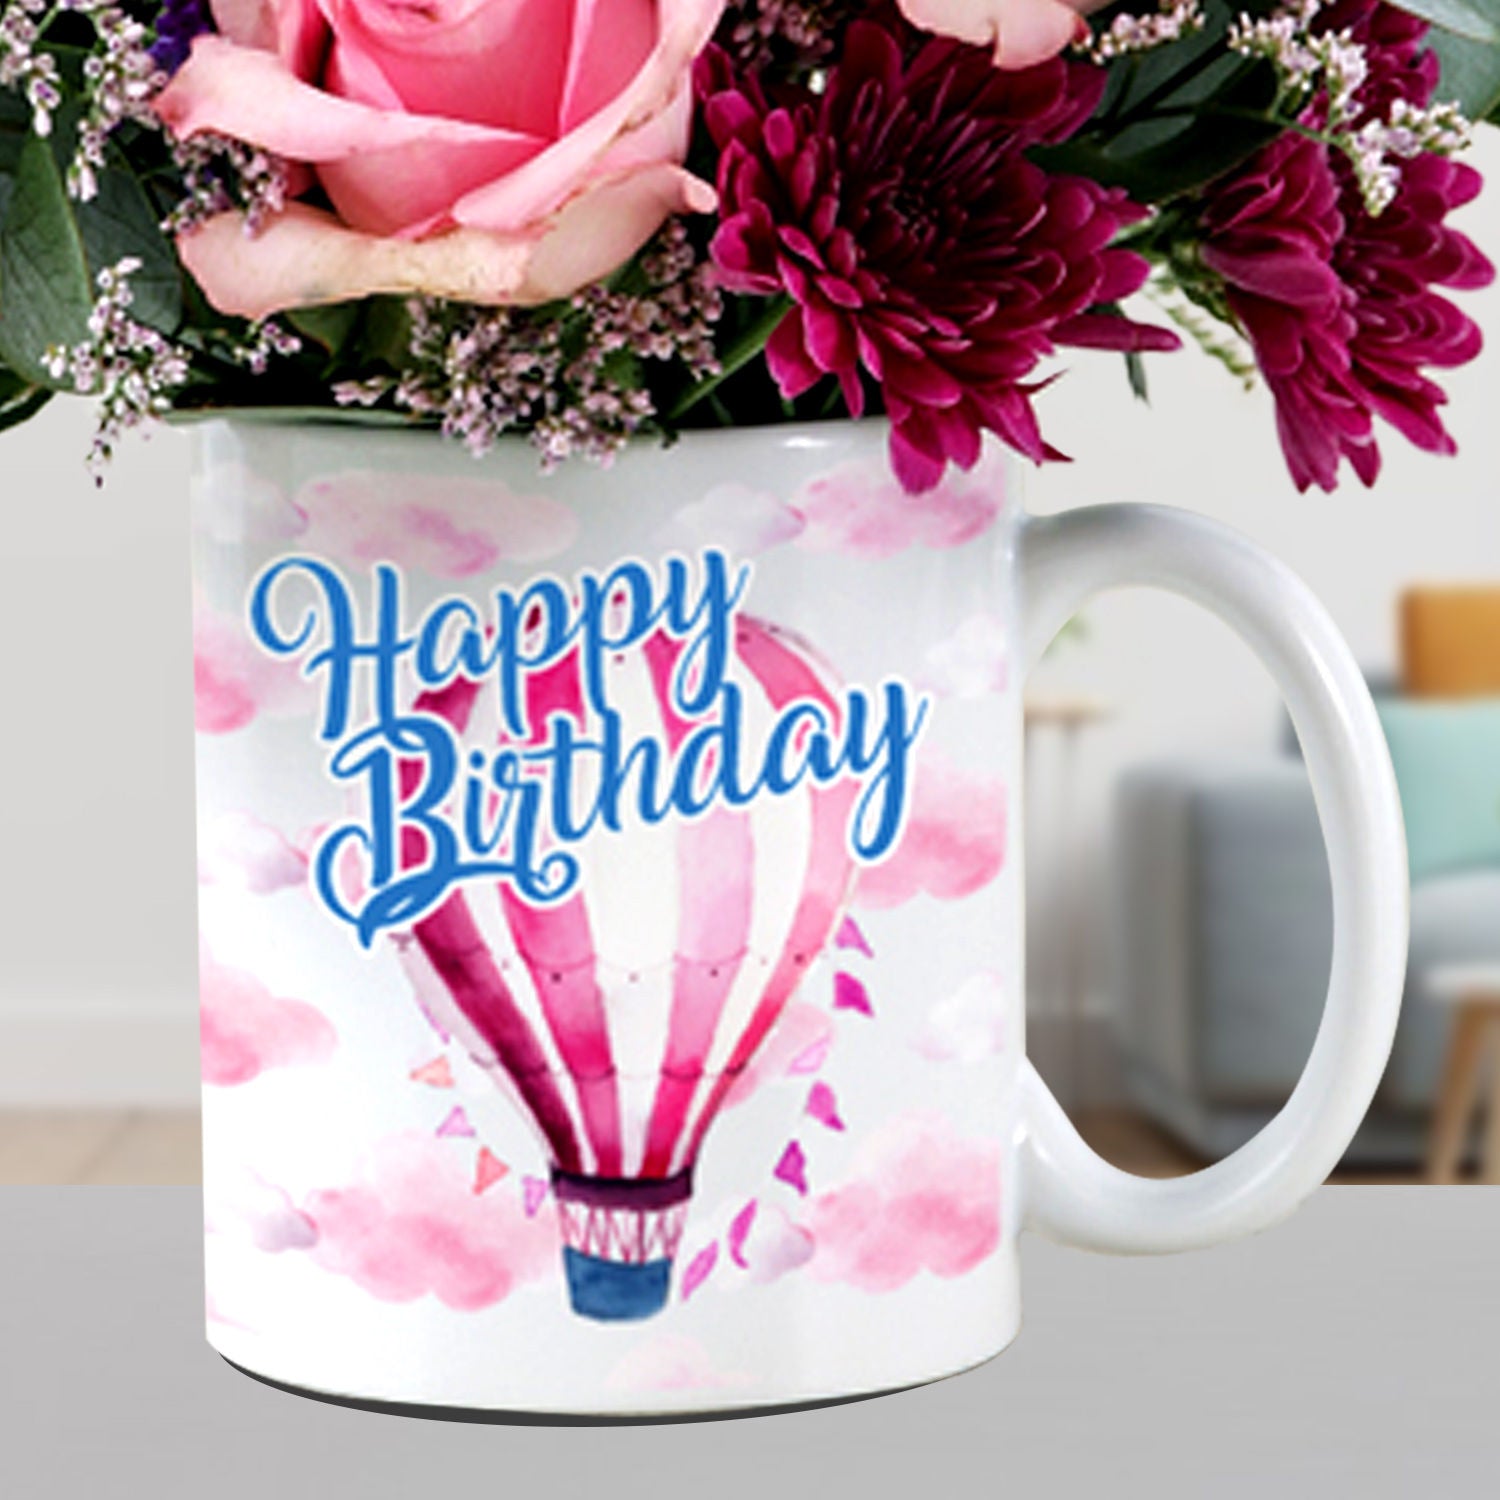 Beautiful Mixed Flowers In Birthday Mug